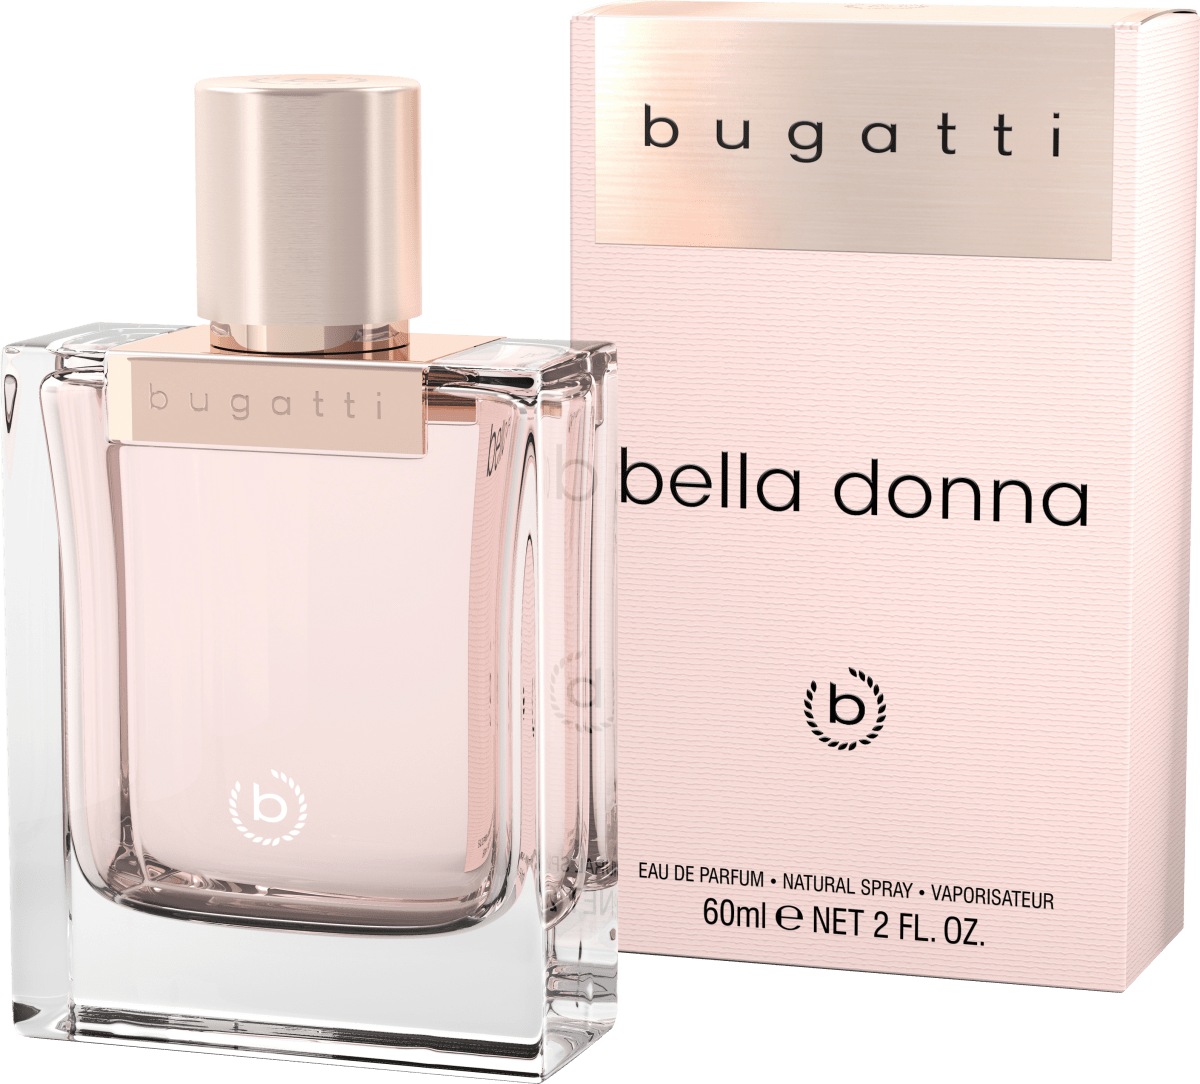 bugatti Bella donna Eau de 60 online ml kaufen dauerhaft günstig Parfum